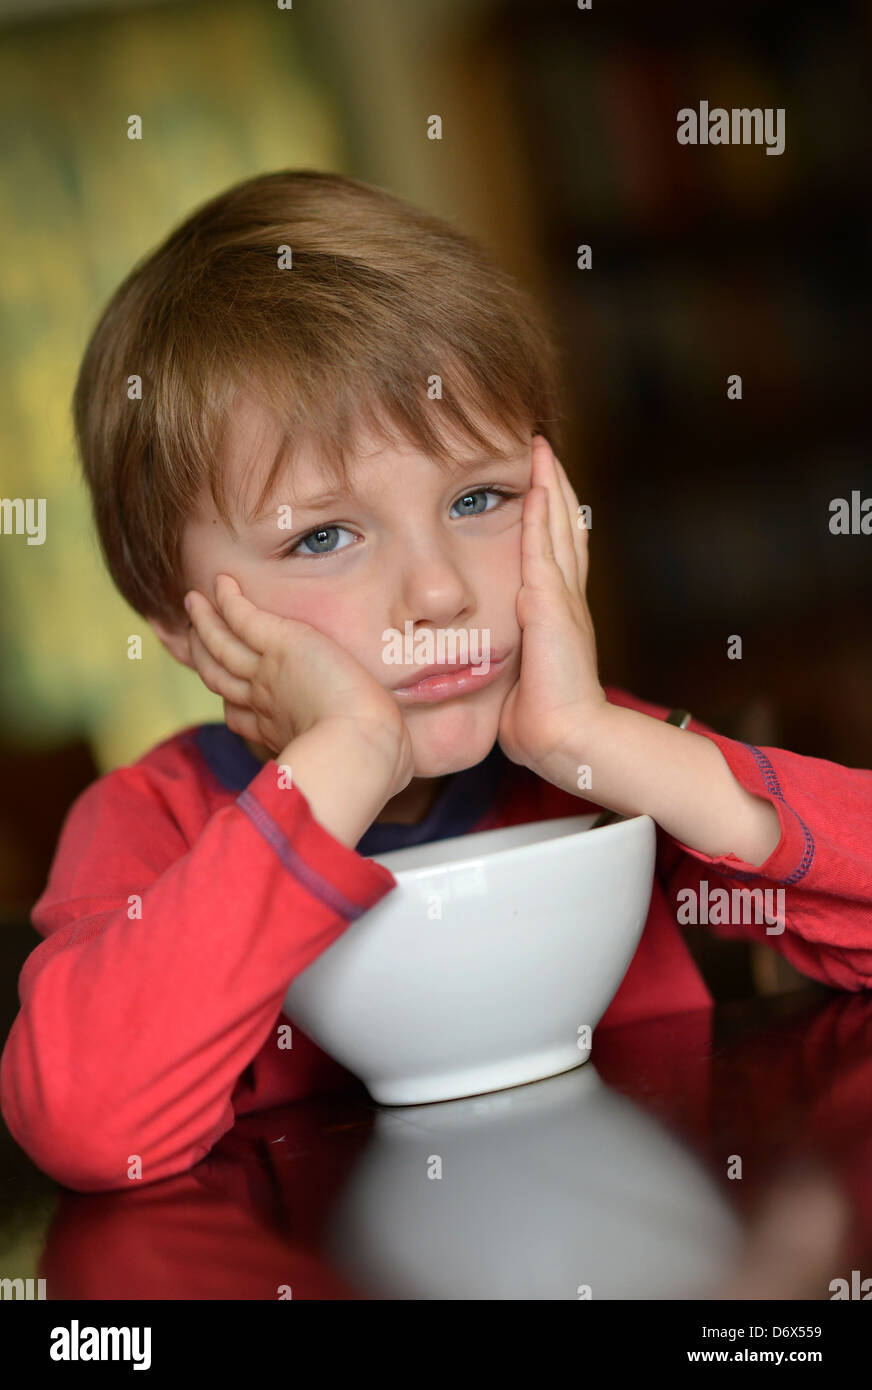 Un garçonnet de cinq ans avec les cheveux bruns et les yeux bleus de manger un bol de céréales pour son petit-déjeuner. Banque D'Images